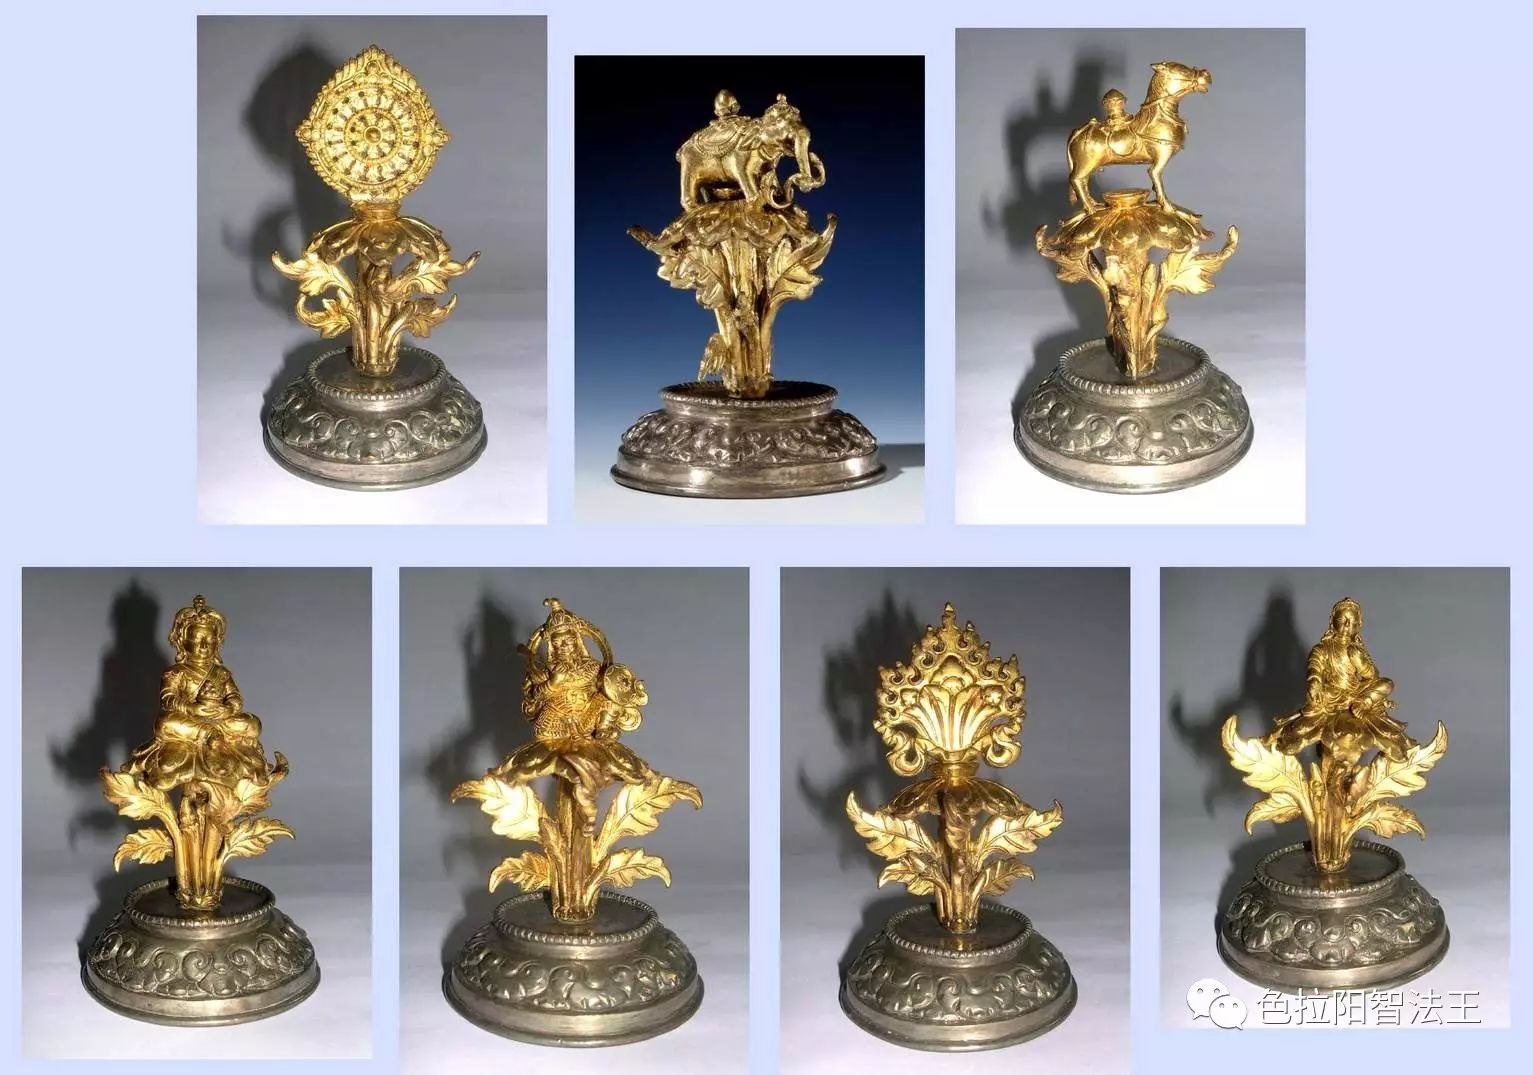 流落大英博物馆的清代藏传佛教雕塑珍品:轮王七宝(七件套)赏析